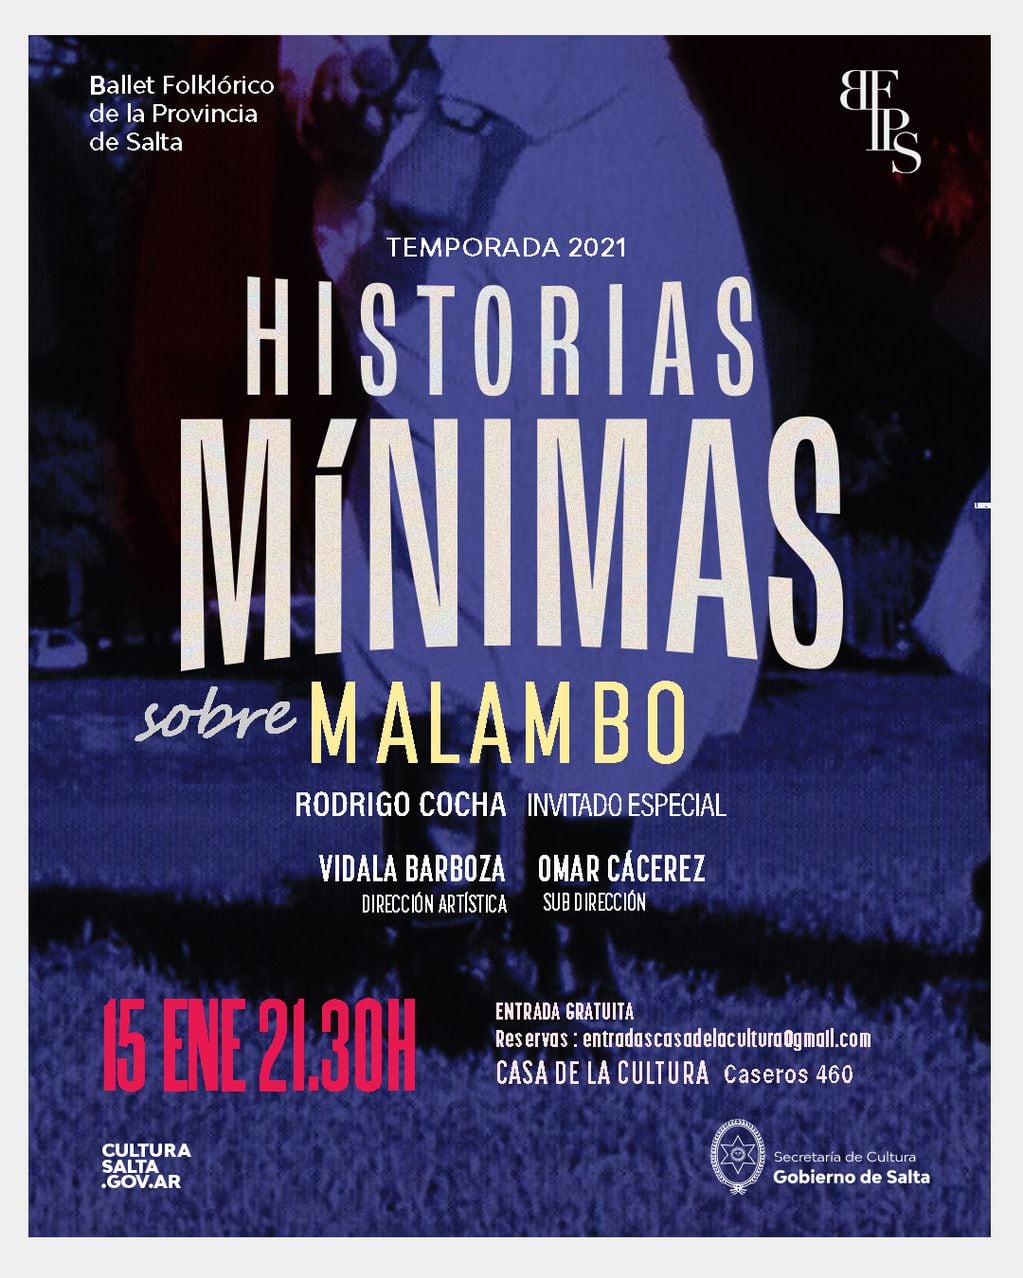 El Ballet Folklórico de la Provincia de Salta presenta el ciclo Historias Mínimas.